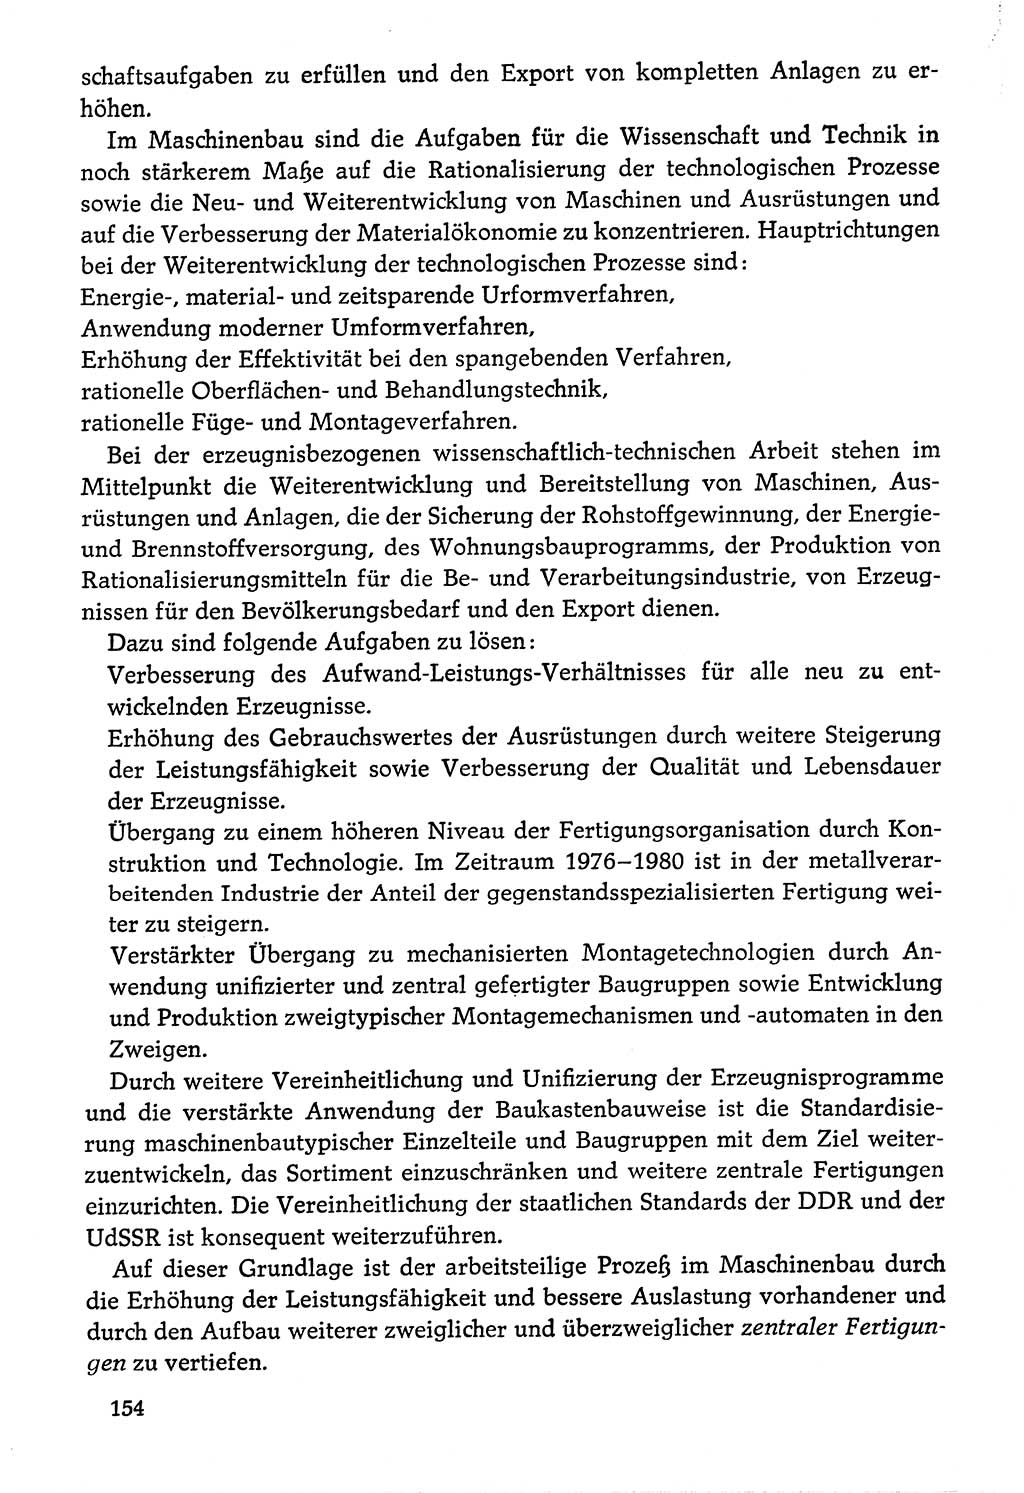 Dokumente der Sozialistischen Einheitspartei Deutschlands (SED) [Deutsche Demokratische Republik (DDR)] 1976-1977, Seite 154 (Dok. SED DDR 1976-1977, S. 154)